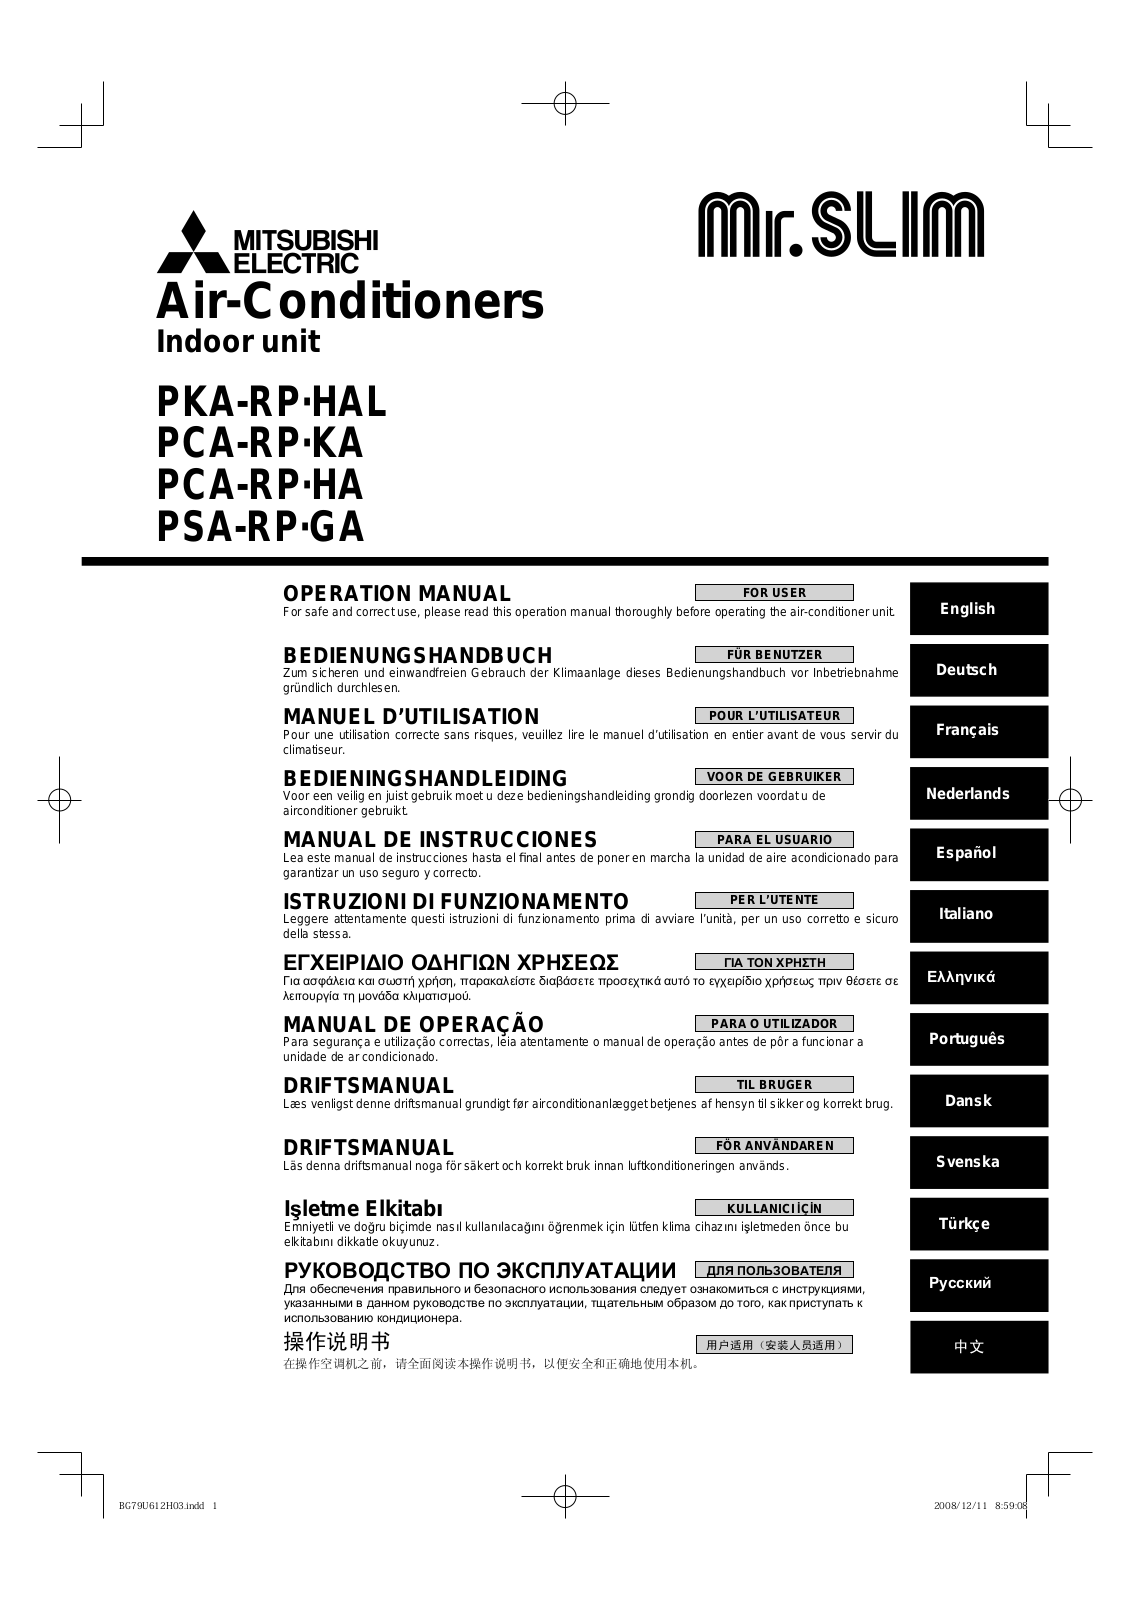 Mitsubishi PKA-RP-HAL, PCA-RP-KA, PCA-RP-HA, PSA-RP-GA User Manual